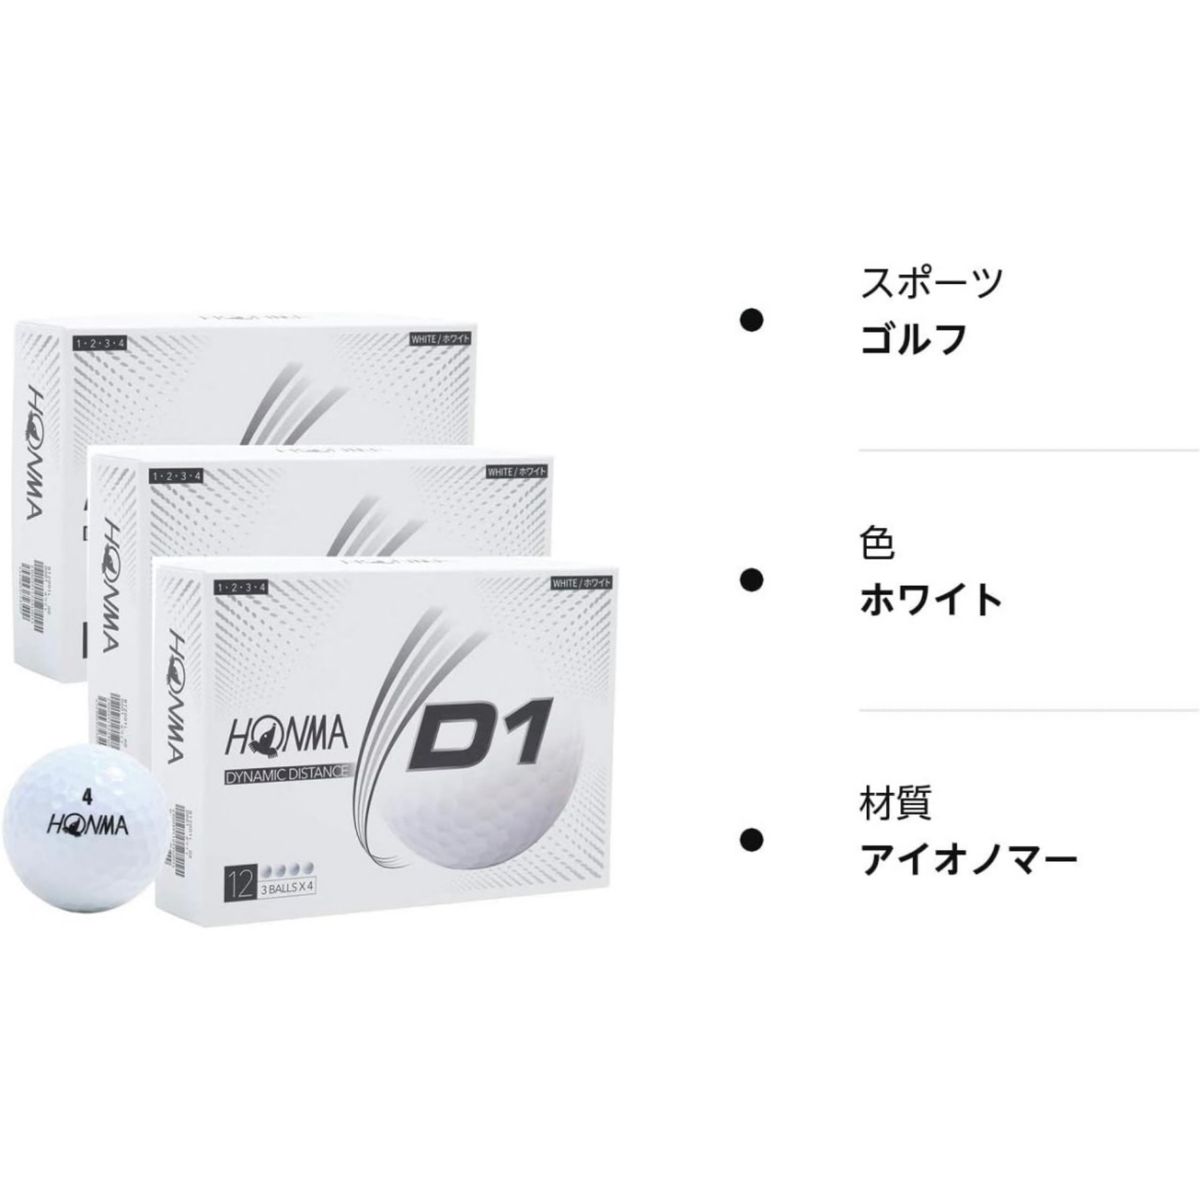 HONMA 本間ゴルフボール D1 2020モデル ホワイト 12球入り／ダース×3箱セット（合計36球）